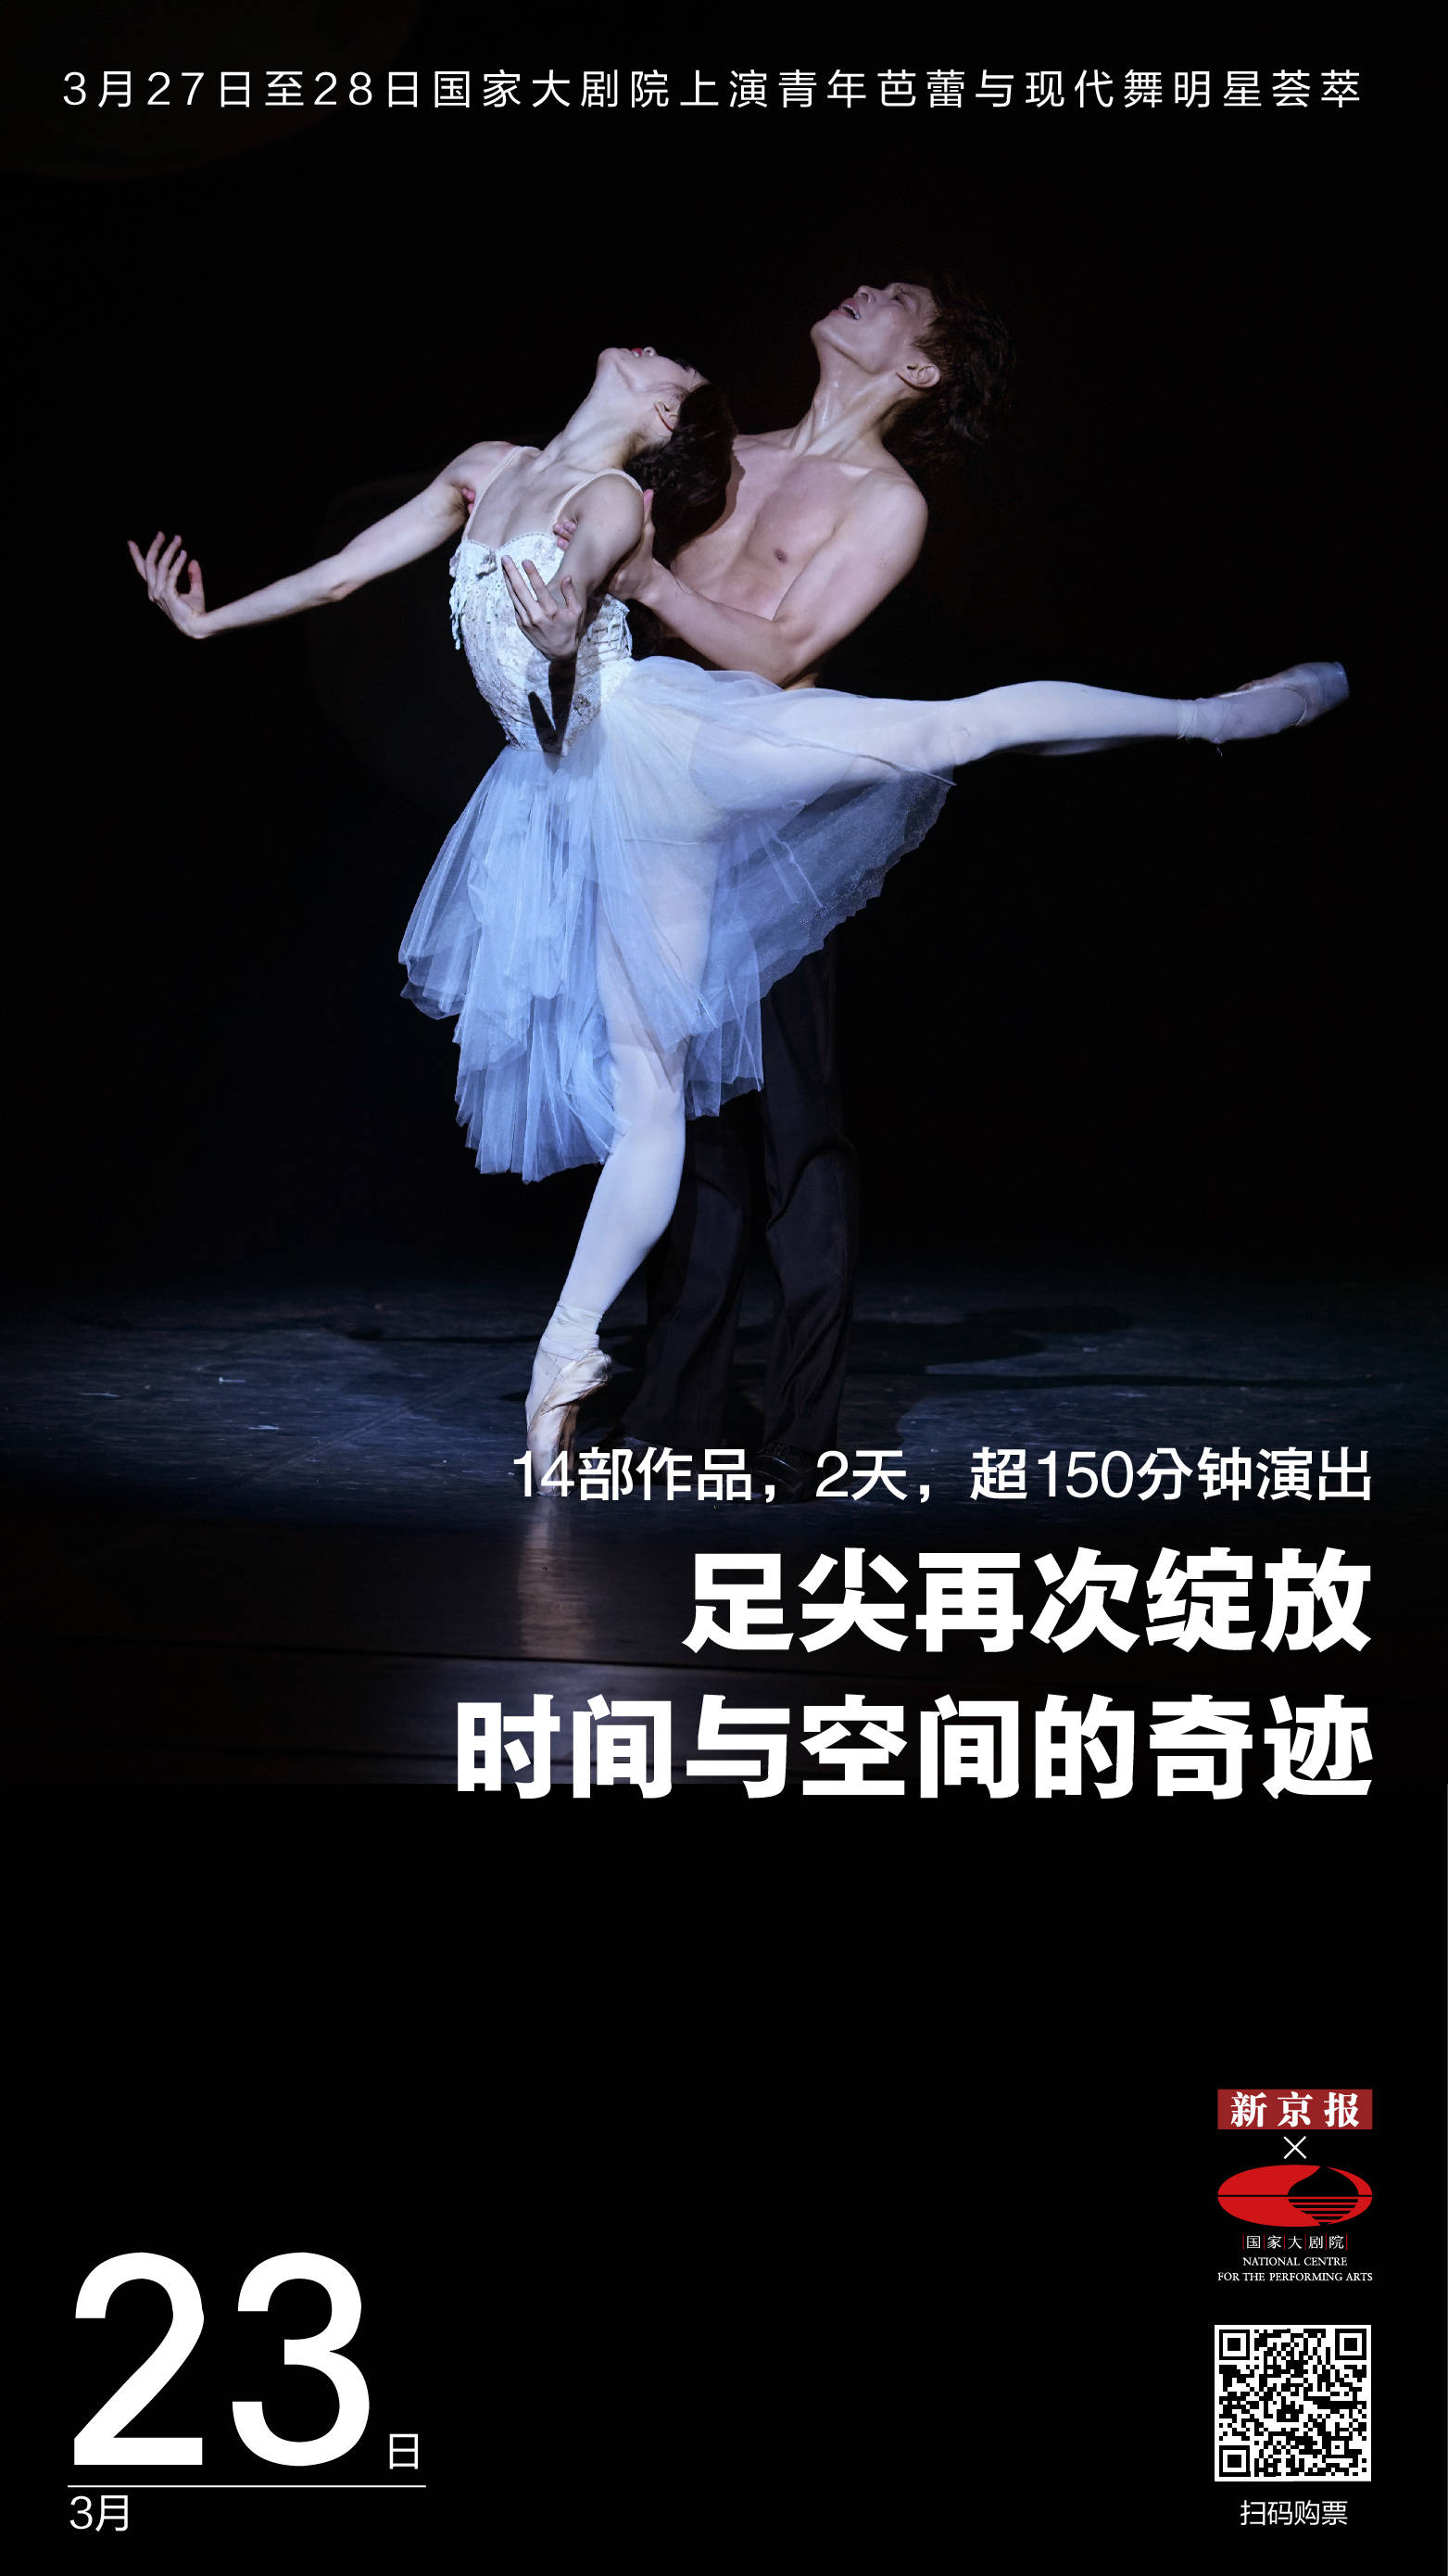 顶尖青年舞者带来两场回归演出丨新京报 国家大剧院 芭蕾舞